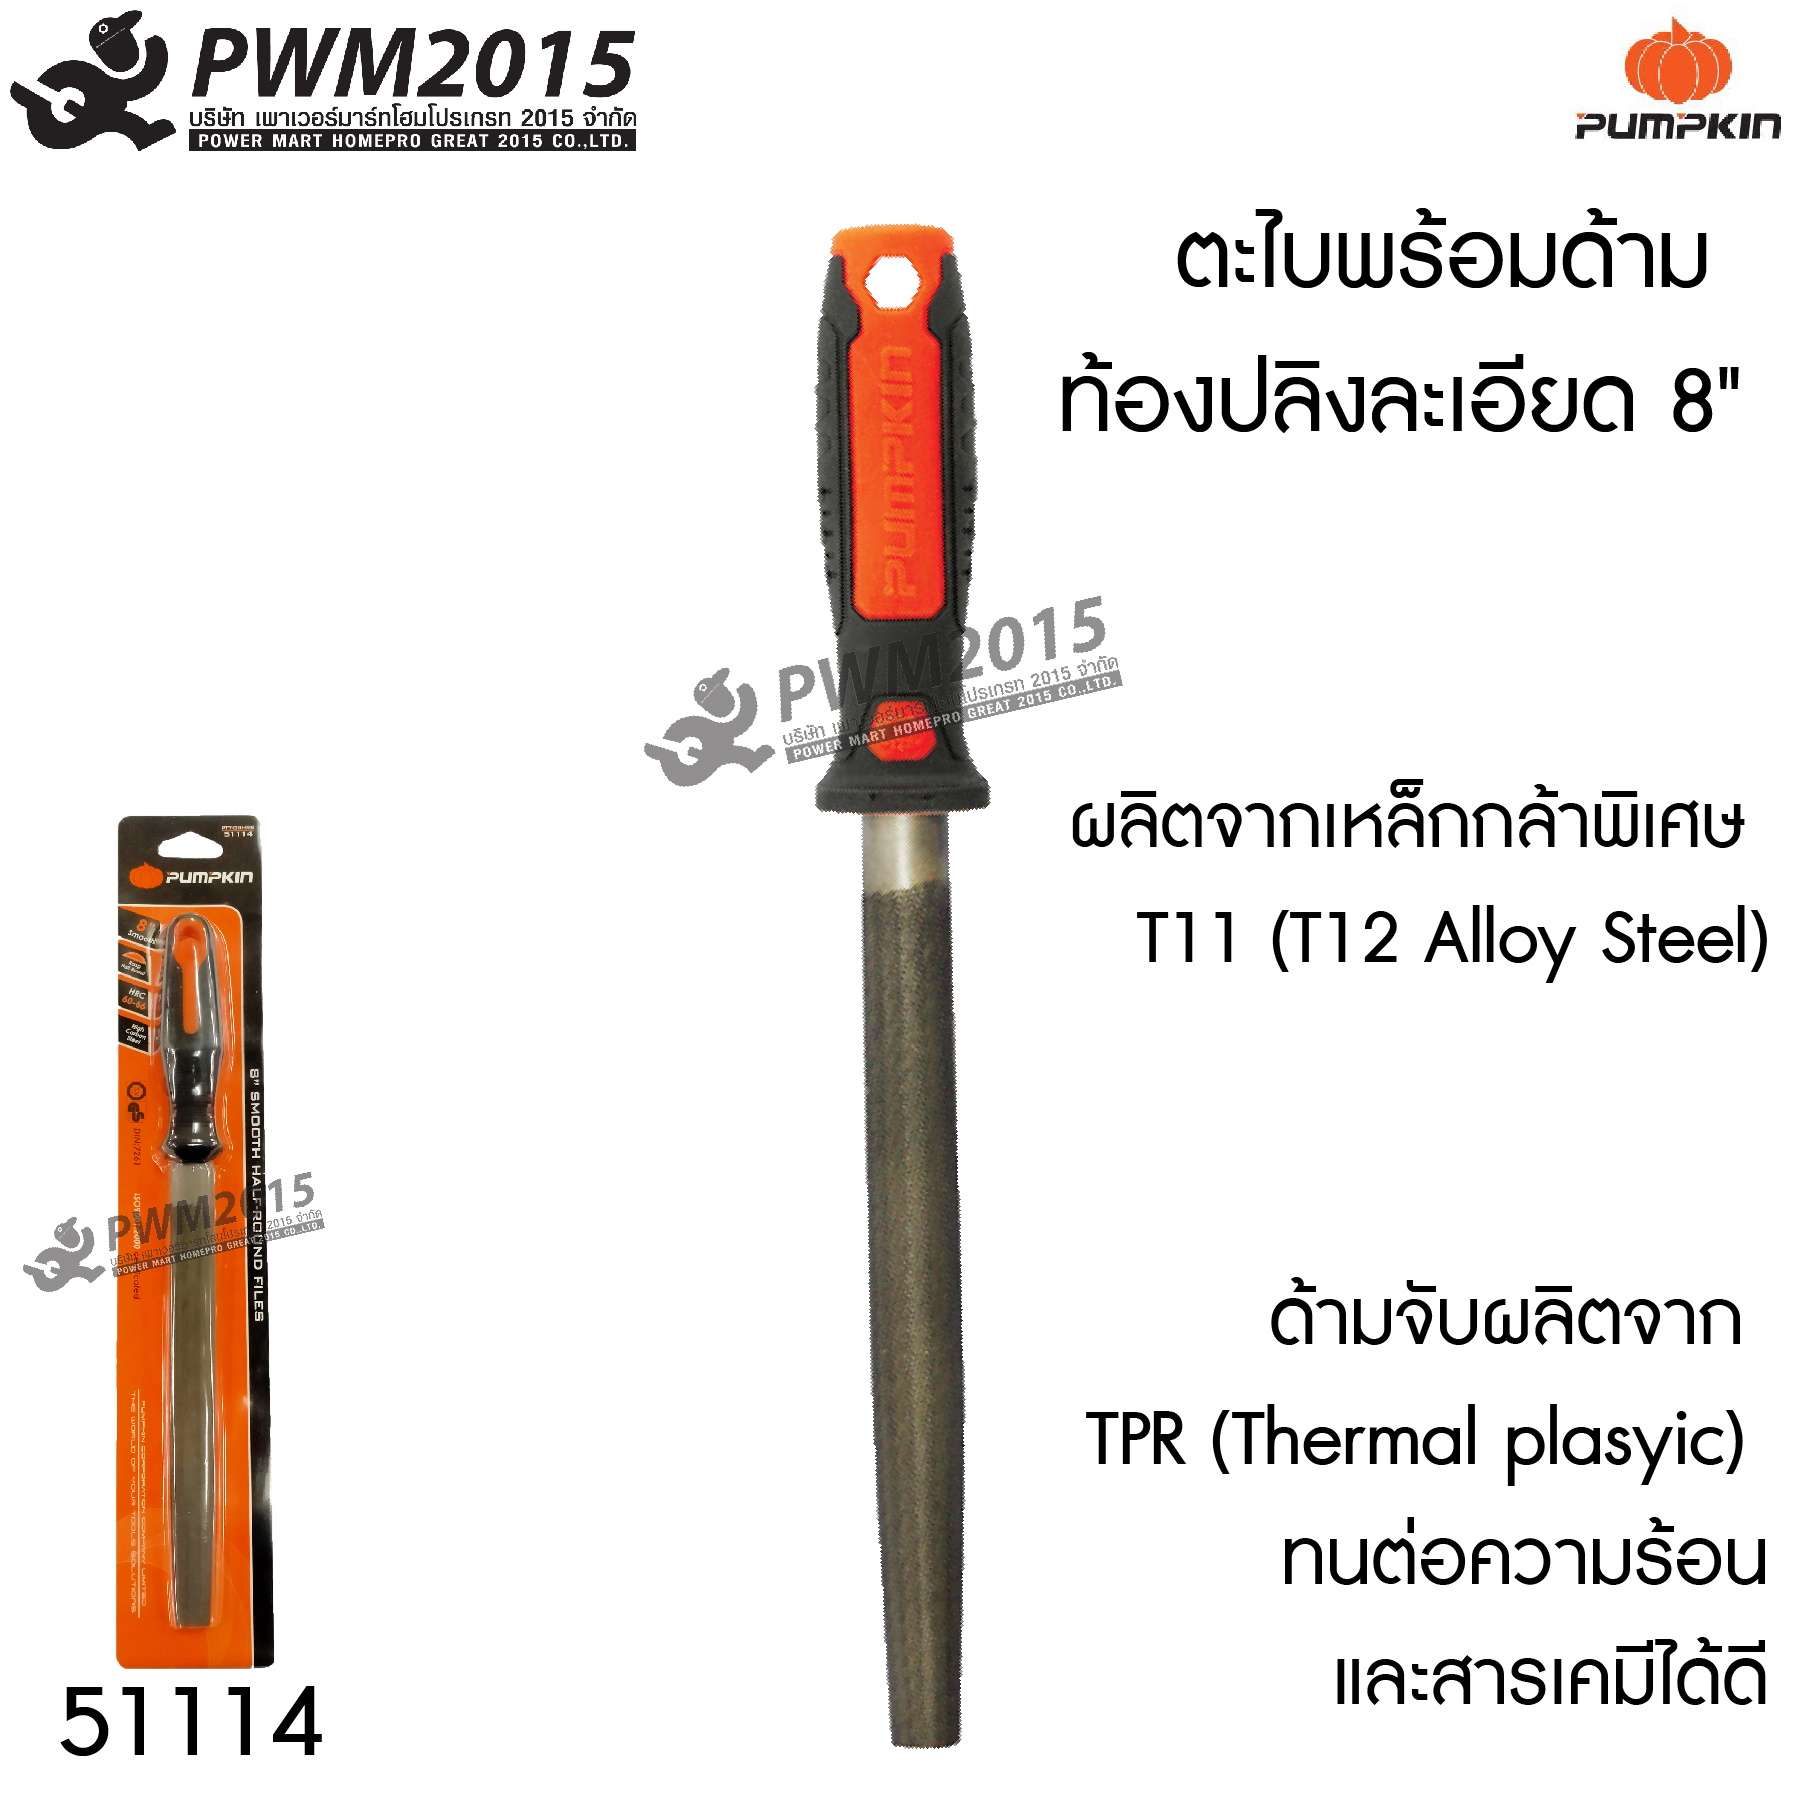 ตะไบ พร้อมด้าม ท้องปลิงละเอียด 8 นิ้ว PUMPKIN 51114 ผลิตจากเหล็กกล้าพิเศษ T11 (T12 Alloy Steel) ด้ามจับผลิตจาก TPR ทนต่อความร้อนและสารเคมีได้ดี PWM2015